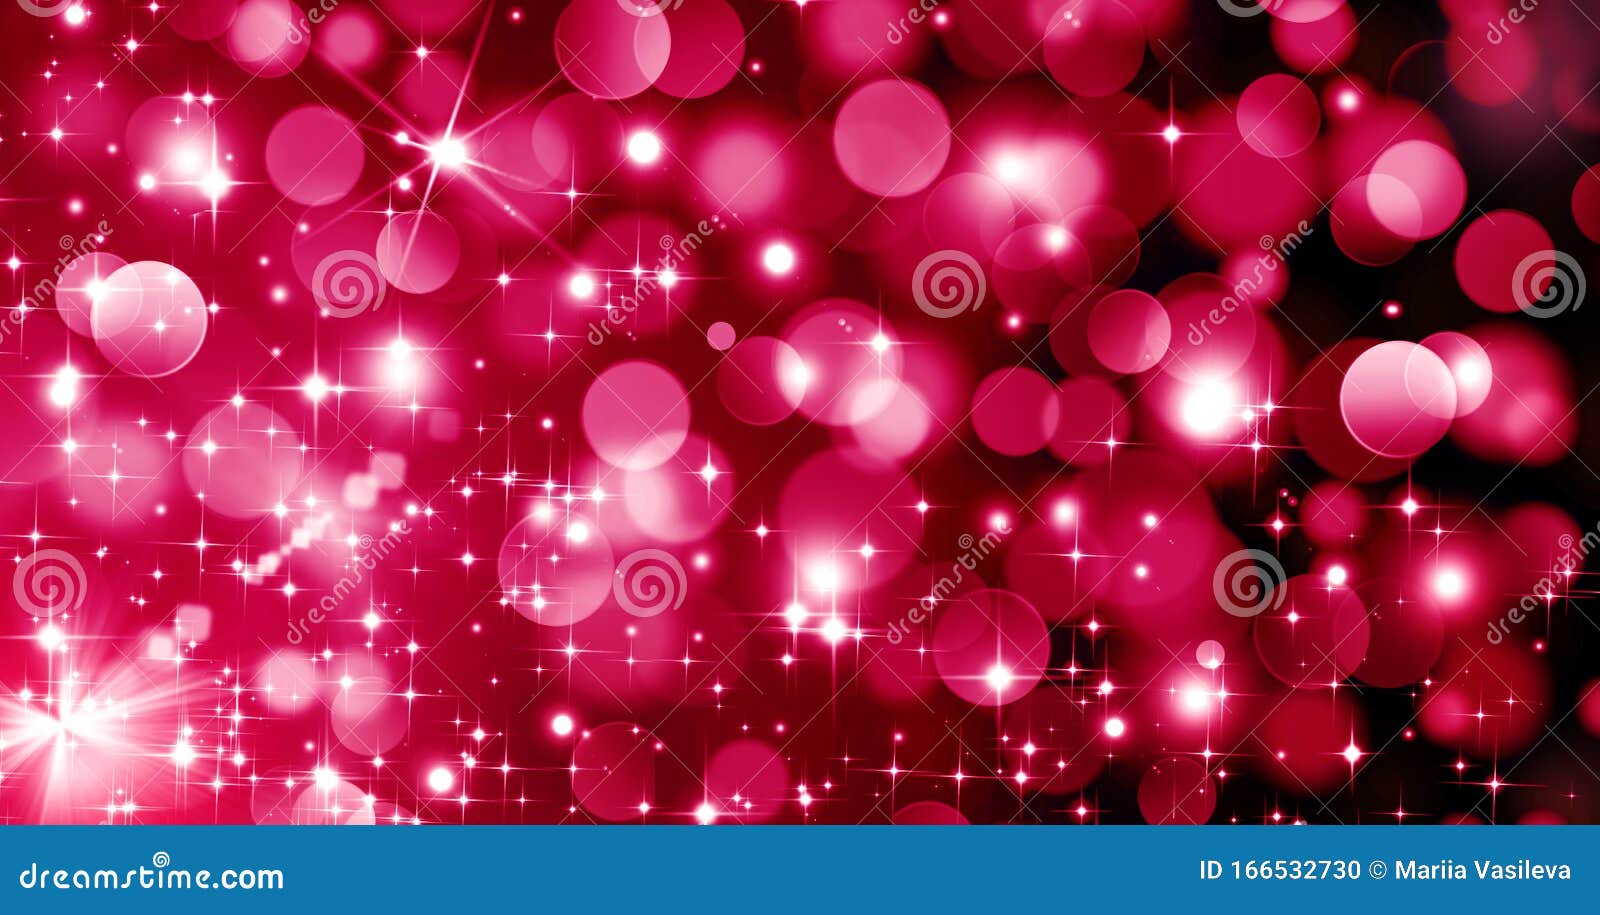 Giáng sinh đã đến và hãy xem hình ảnh Red Christmas bokeh background với ánh sáng bokeh màu hồng để trang trí cho thiết bị của bạn trong mùa lễ hội. Với ánh sáng tươi sáng, sự rực rỡ của bokeh màu hồng sẽ tạo ra một không khí ấm áp và đầy lễ hội cho thiết bị của bạn.